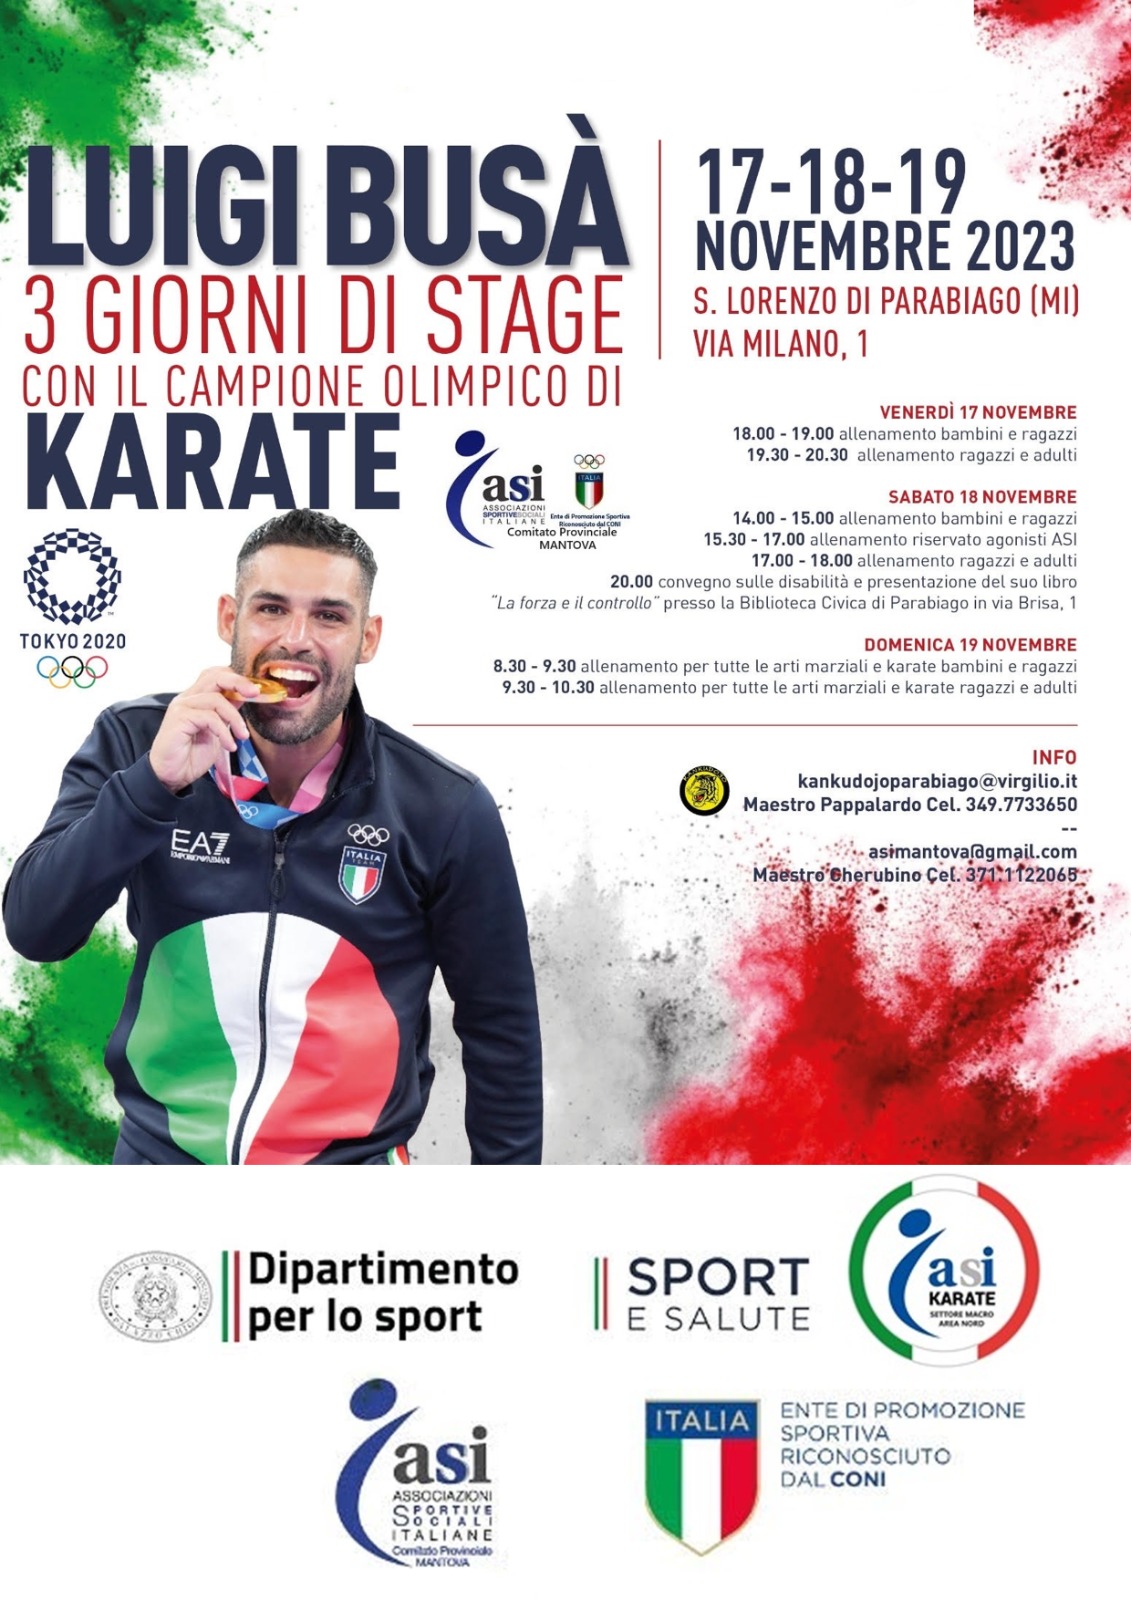 Luigi Busà – 3 giorni di Stage con il Campione Olimpico di Karate